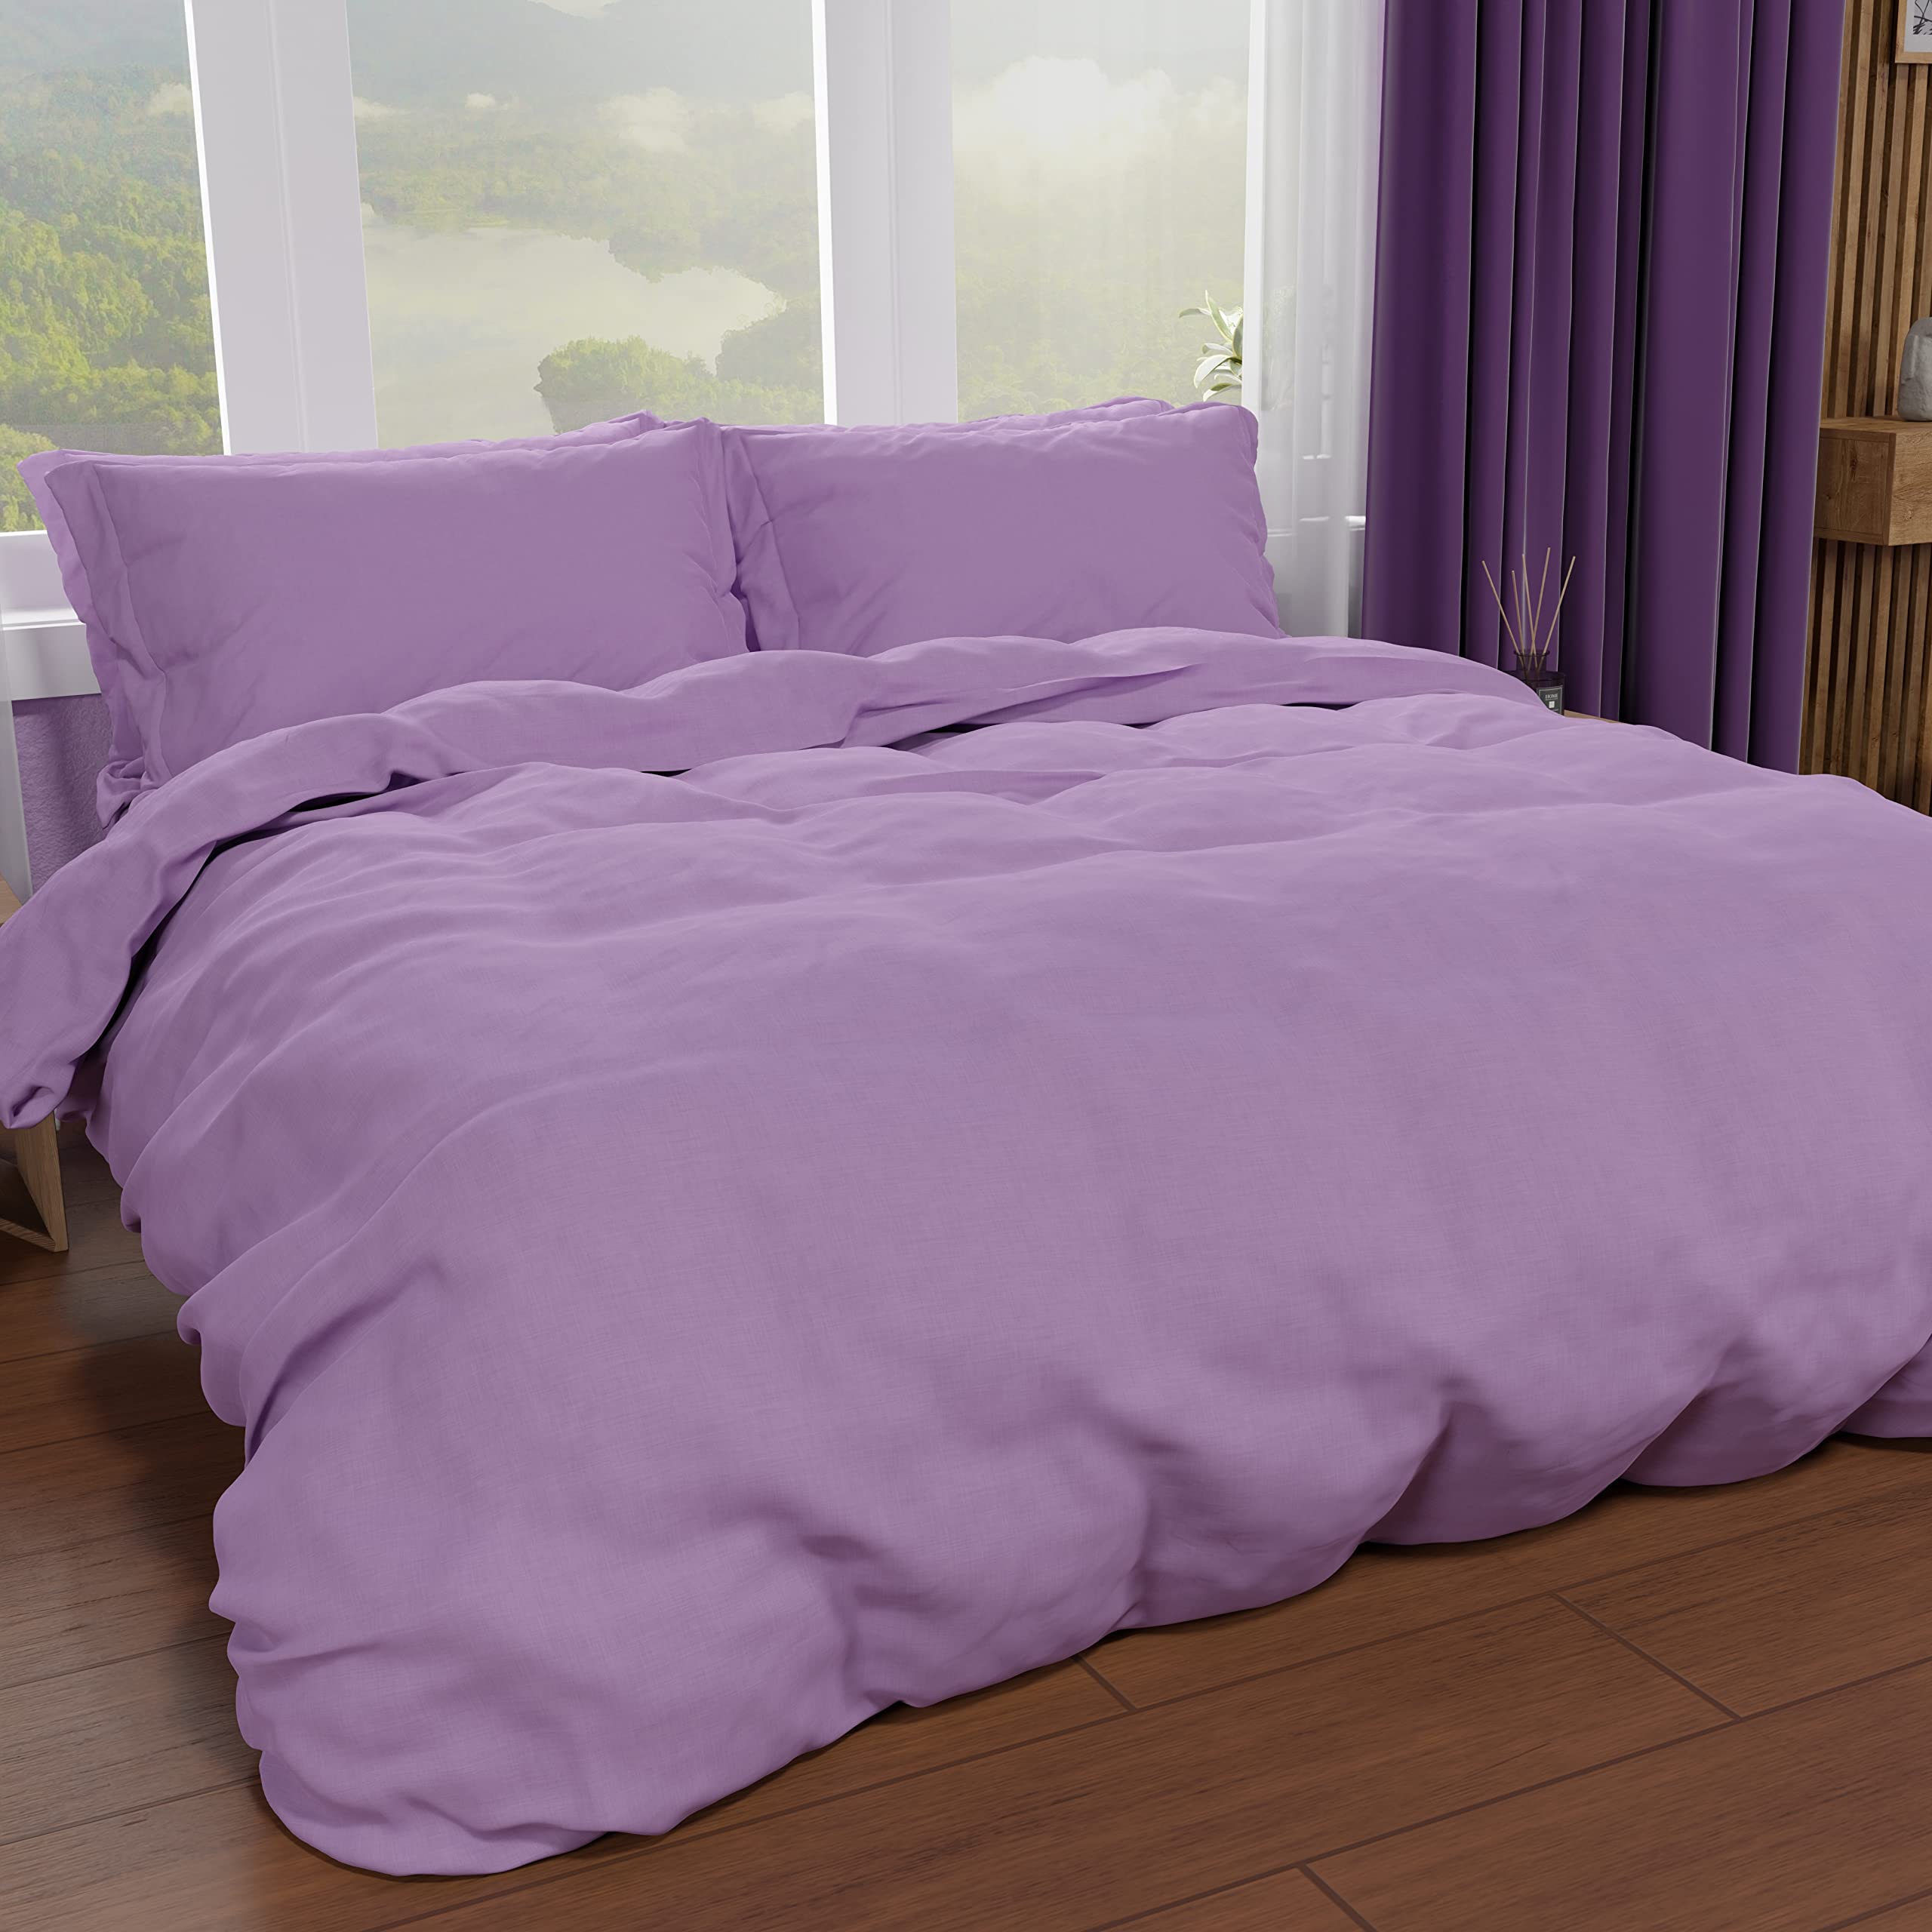 PETTI Artigiani Italiani - Bettbezug für französisches Bett, Bettbezug und Kissenbezüge aus Mikrofaser, einfarbig lila, 100% Made in Italy